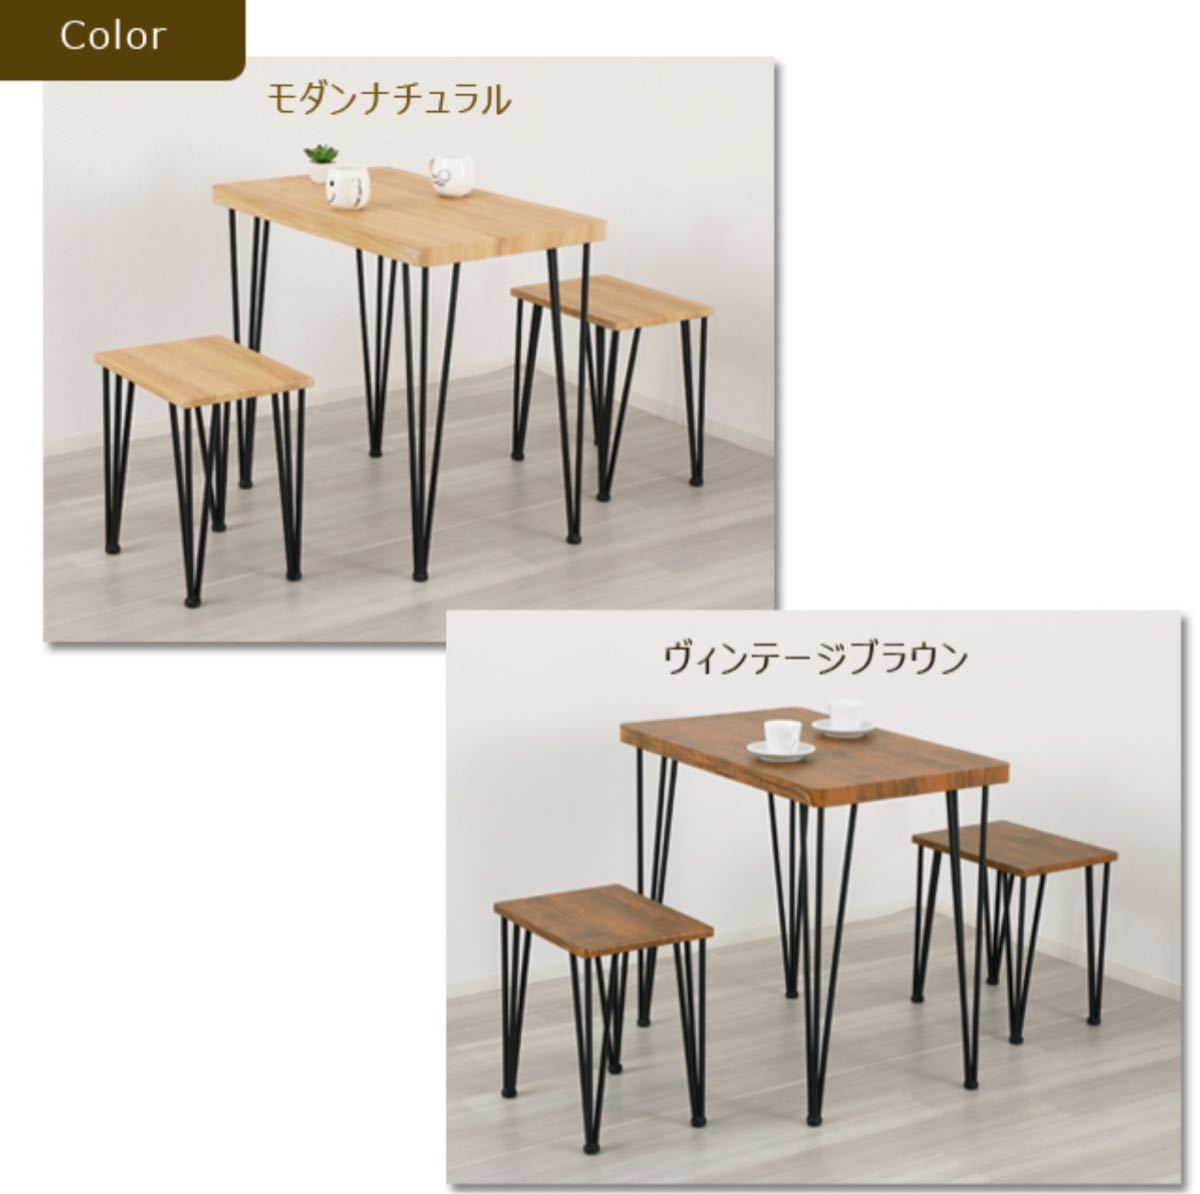 【送料無料】ダイニング3点セット テーブル 机 チェア 椅子 ブラウン 木目調_画像3